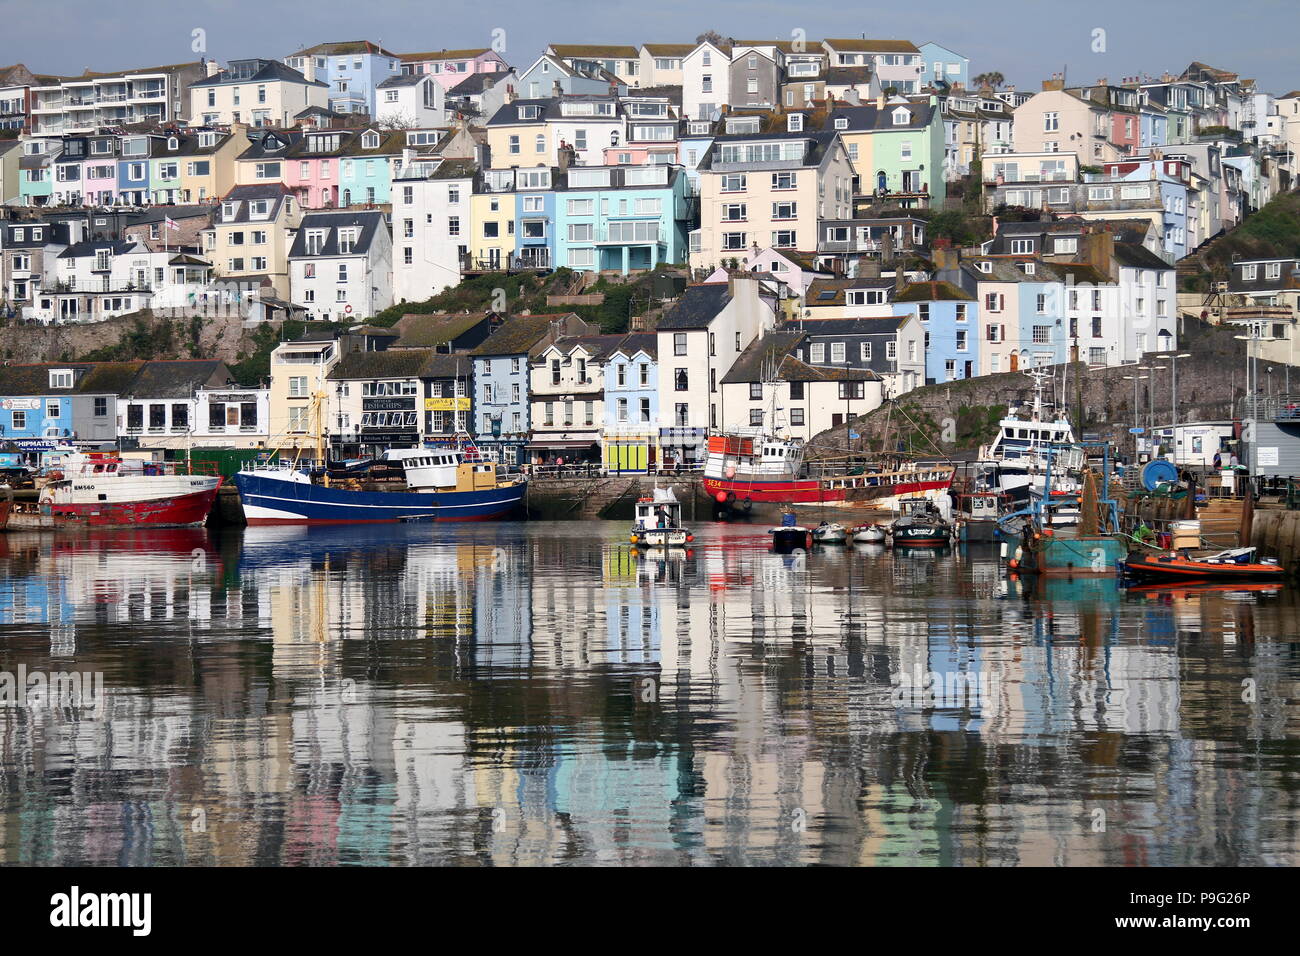 Port de Brixham, Devon, Angleterre : les tons pastel maisons qui se reflètent dans les eaux du port sur un matin ensoleillé Banque D'Images